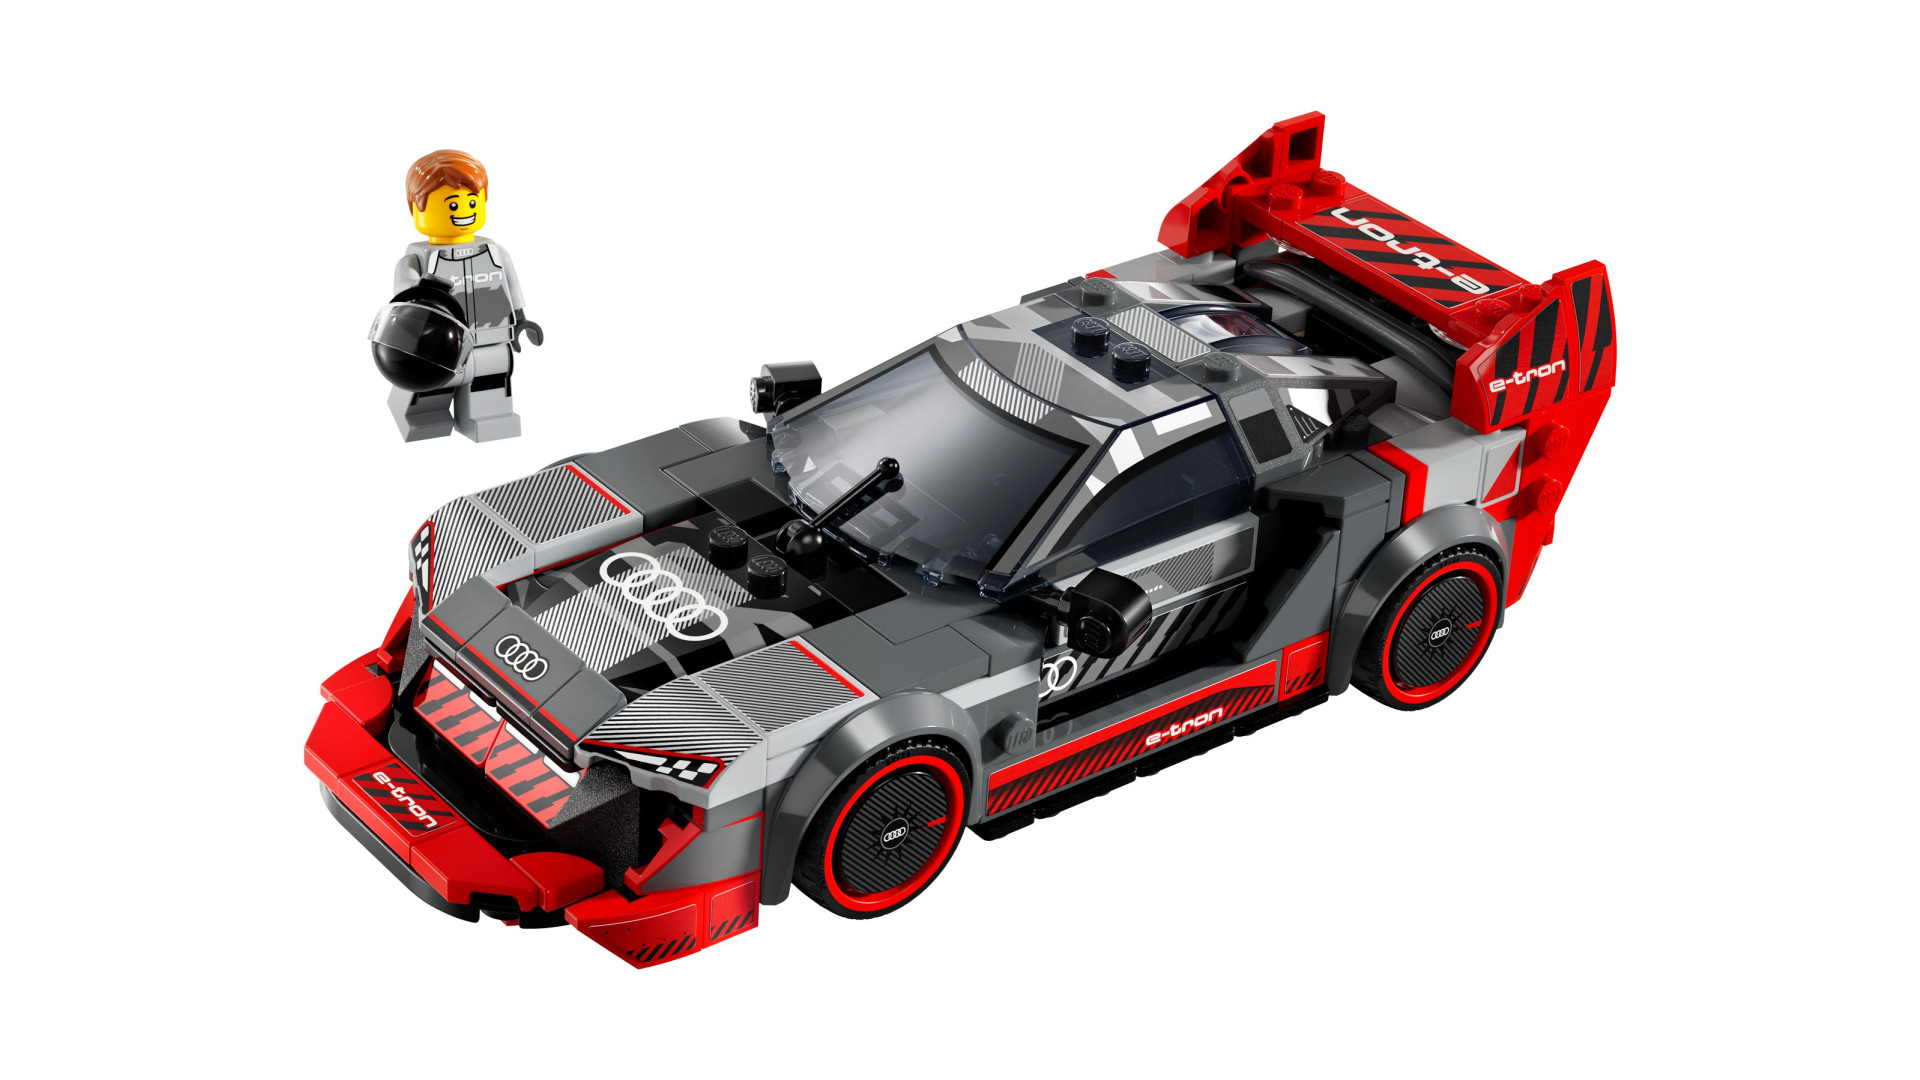 LEGO Voiture de course Audi S1 e-tron quattro